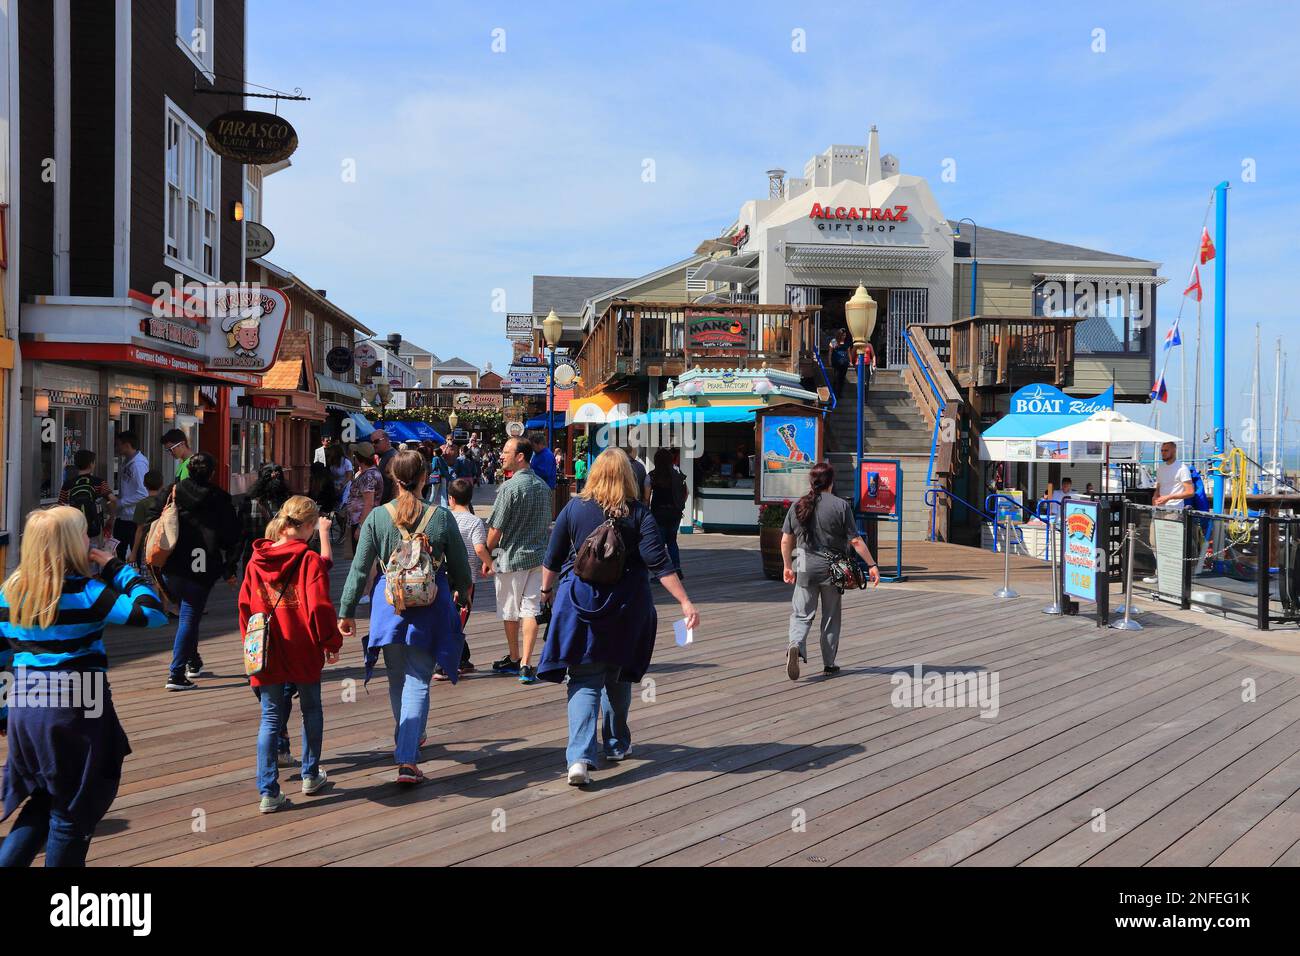 SAN FRANCISCO, USA - 8 APRILE 2014: La gente visita Fisherman's Wharf a San Francisco, USA. San Francisco è la 4th città più popolosa della California. Foto Stock